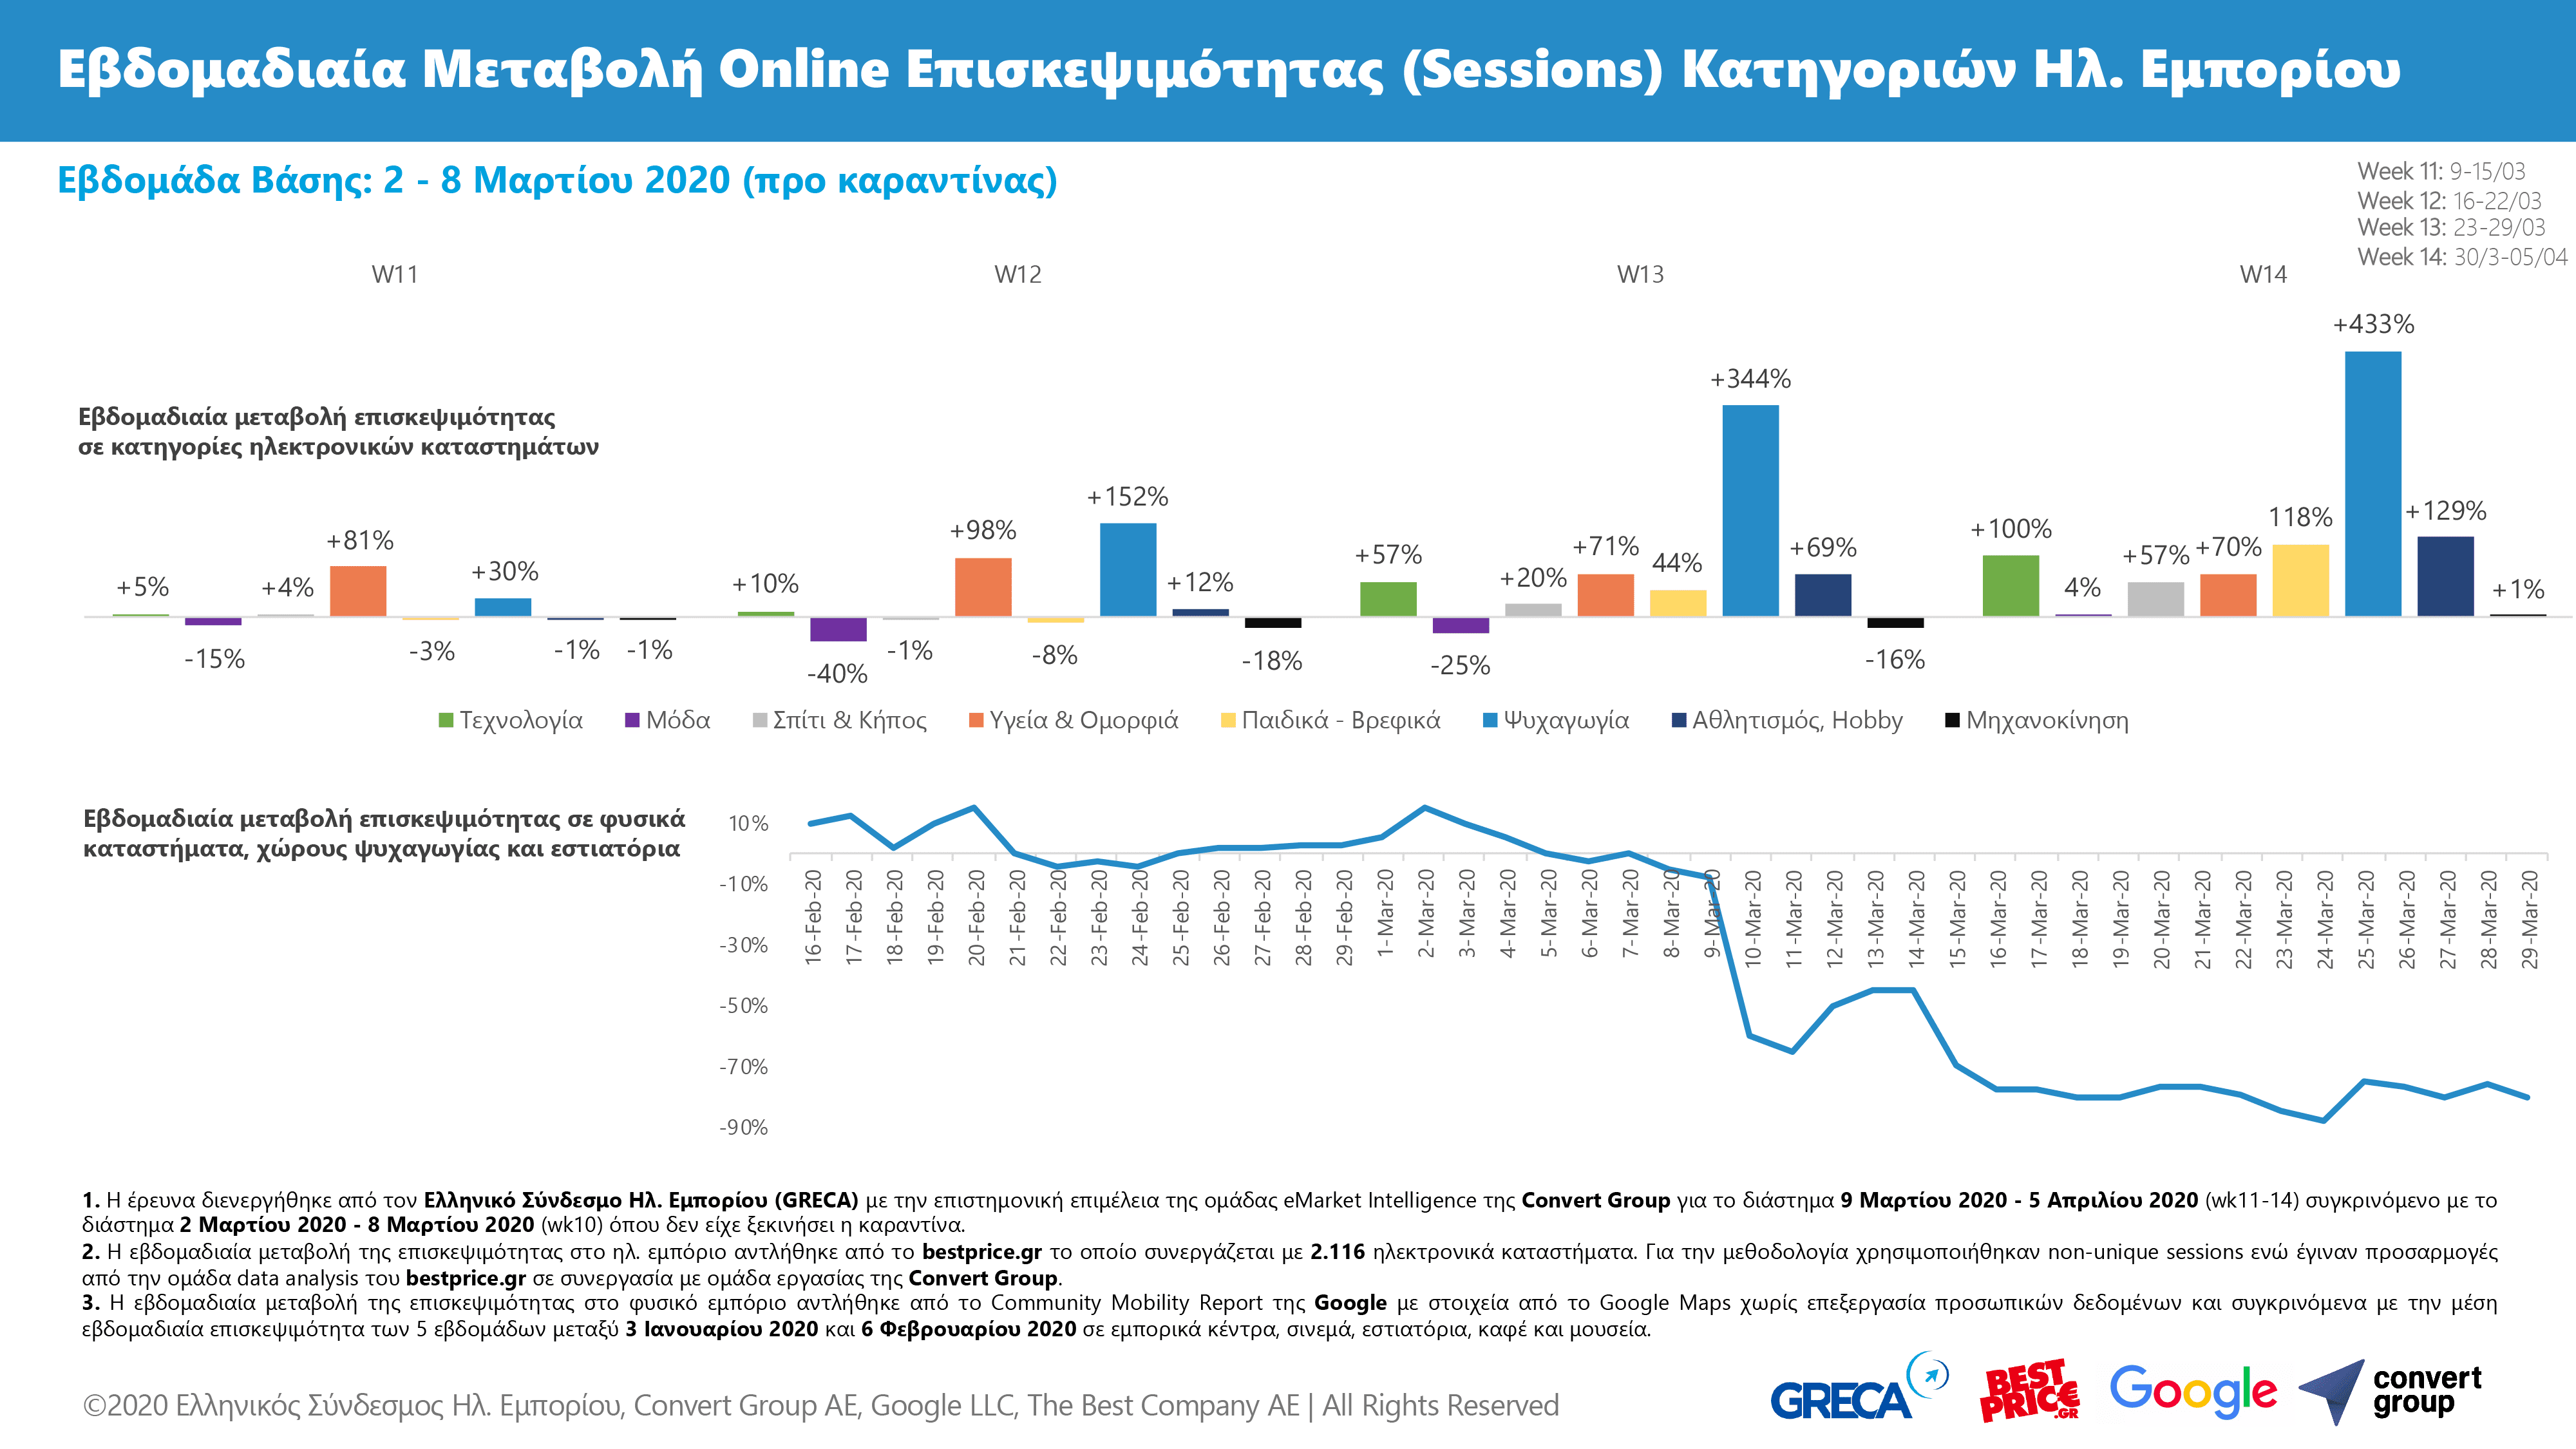 Greek eCommerce March 2020 Visits Online Offline